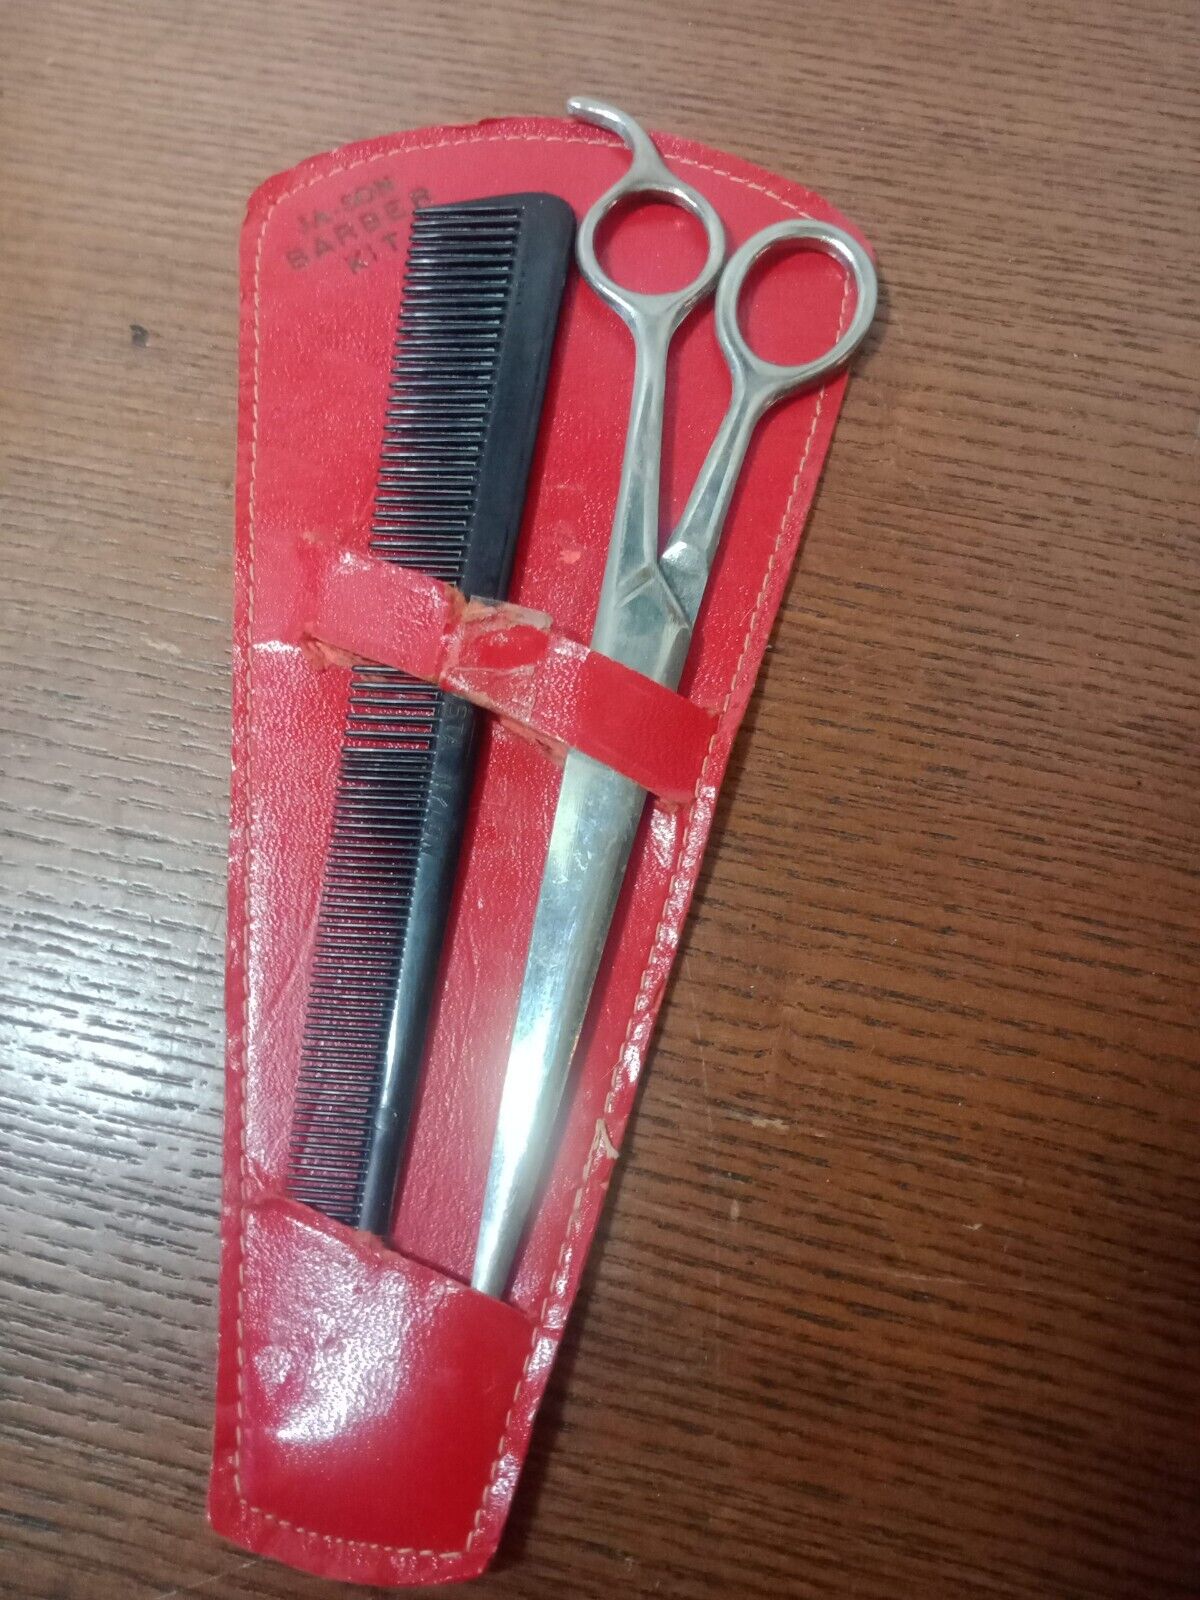 Vintage JA-SON Barber Kit Scissors & Comb ( Fosta Nylon) in Case